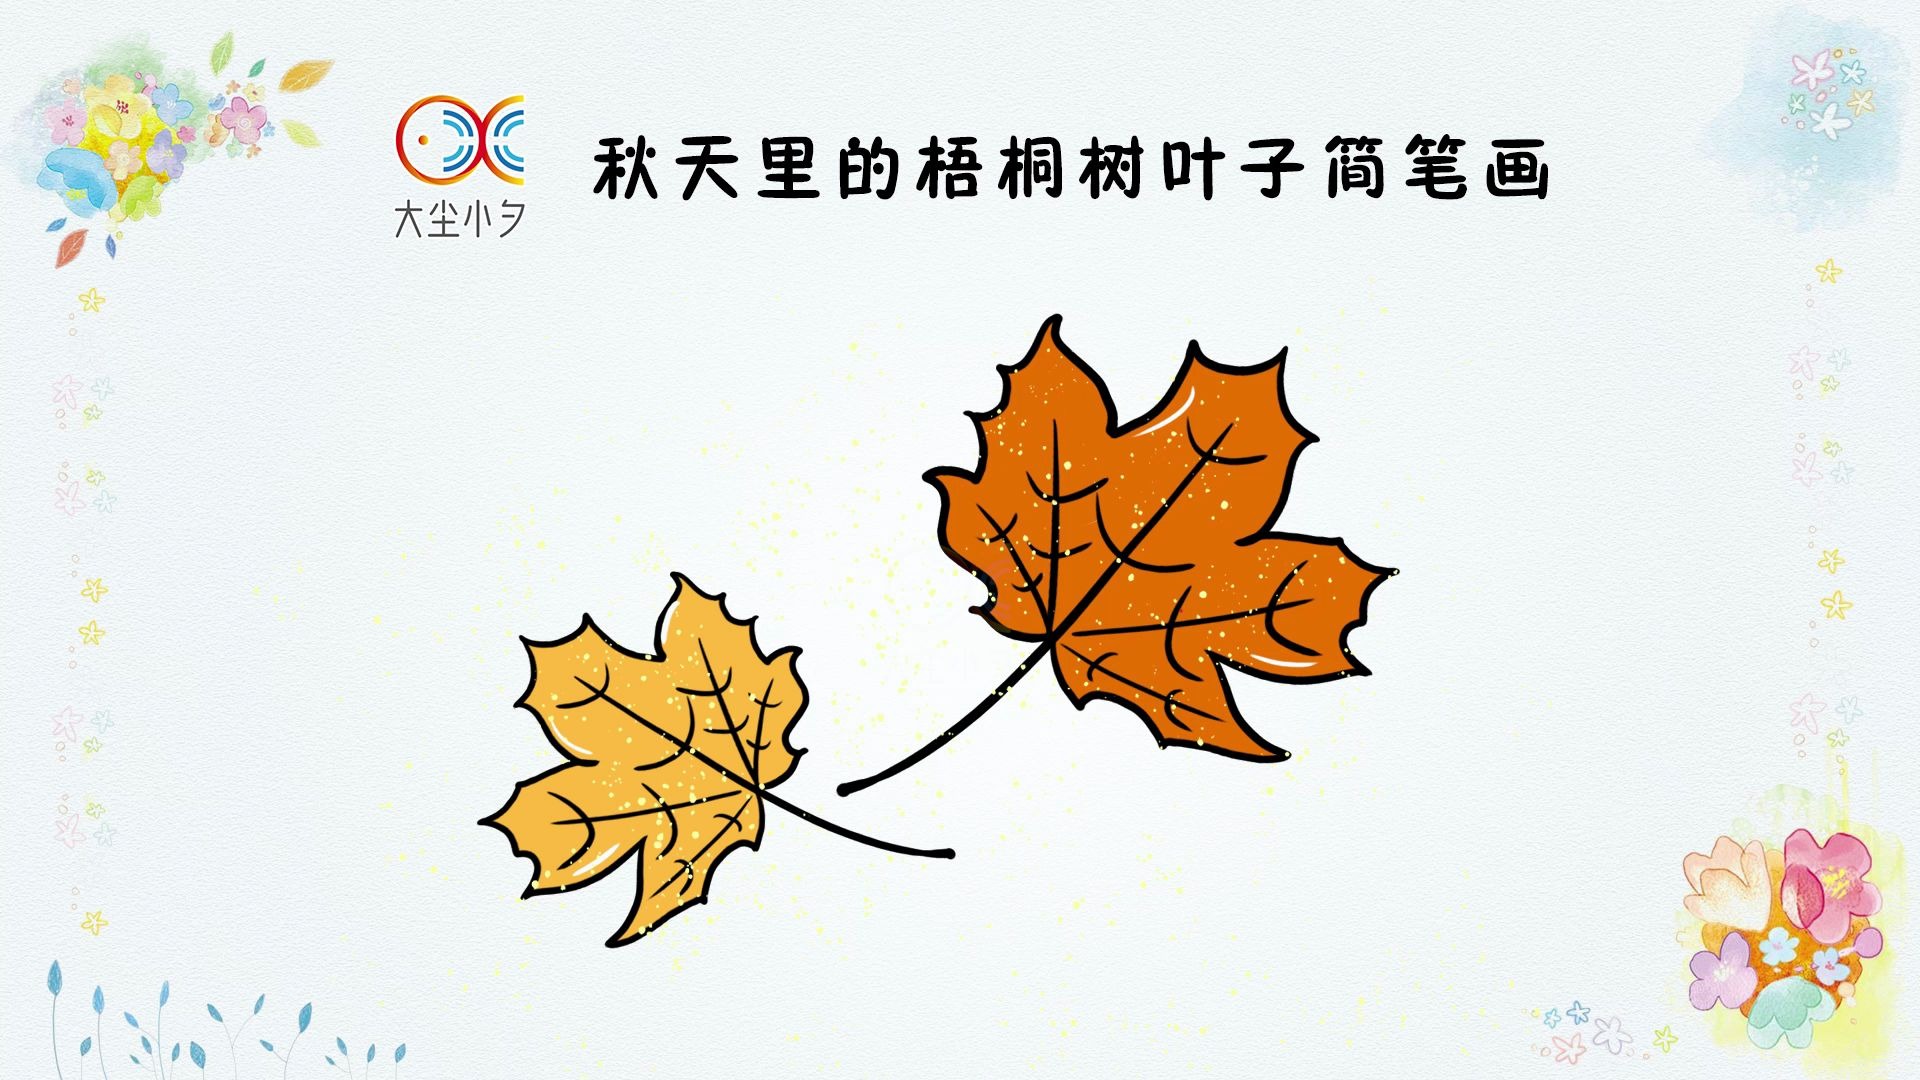 教你画秋天里的梧桐树叶子简笔画,30秒看绘儿童画